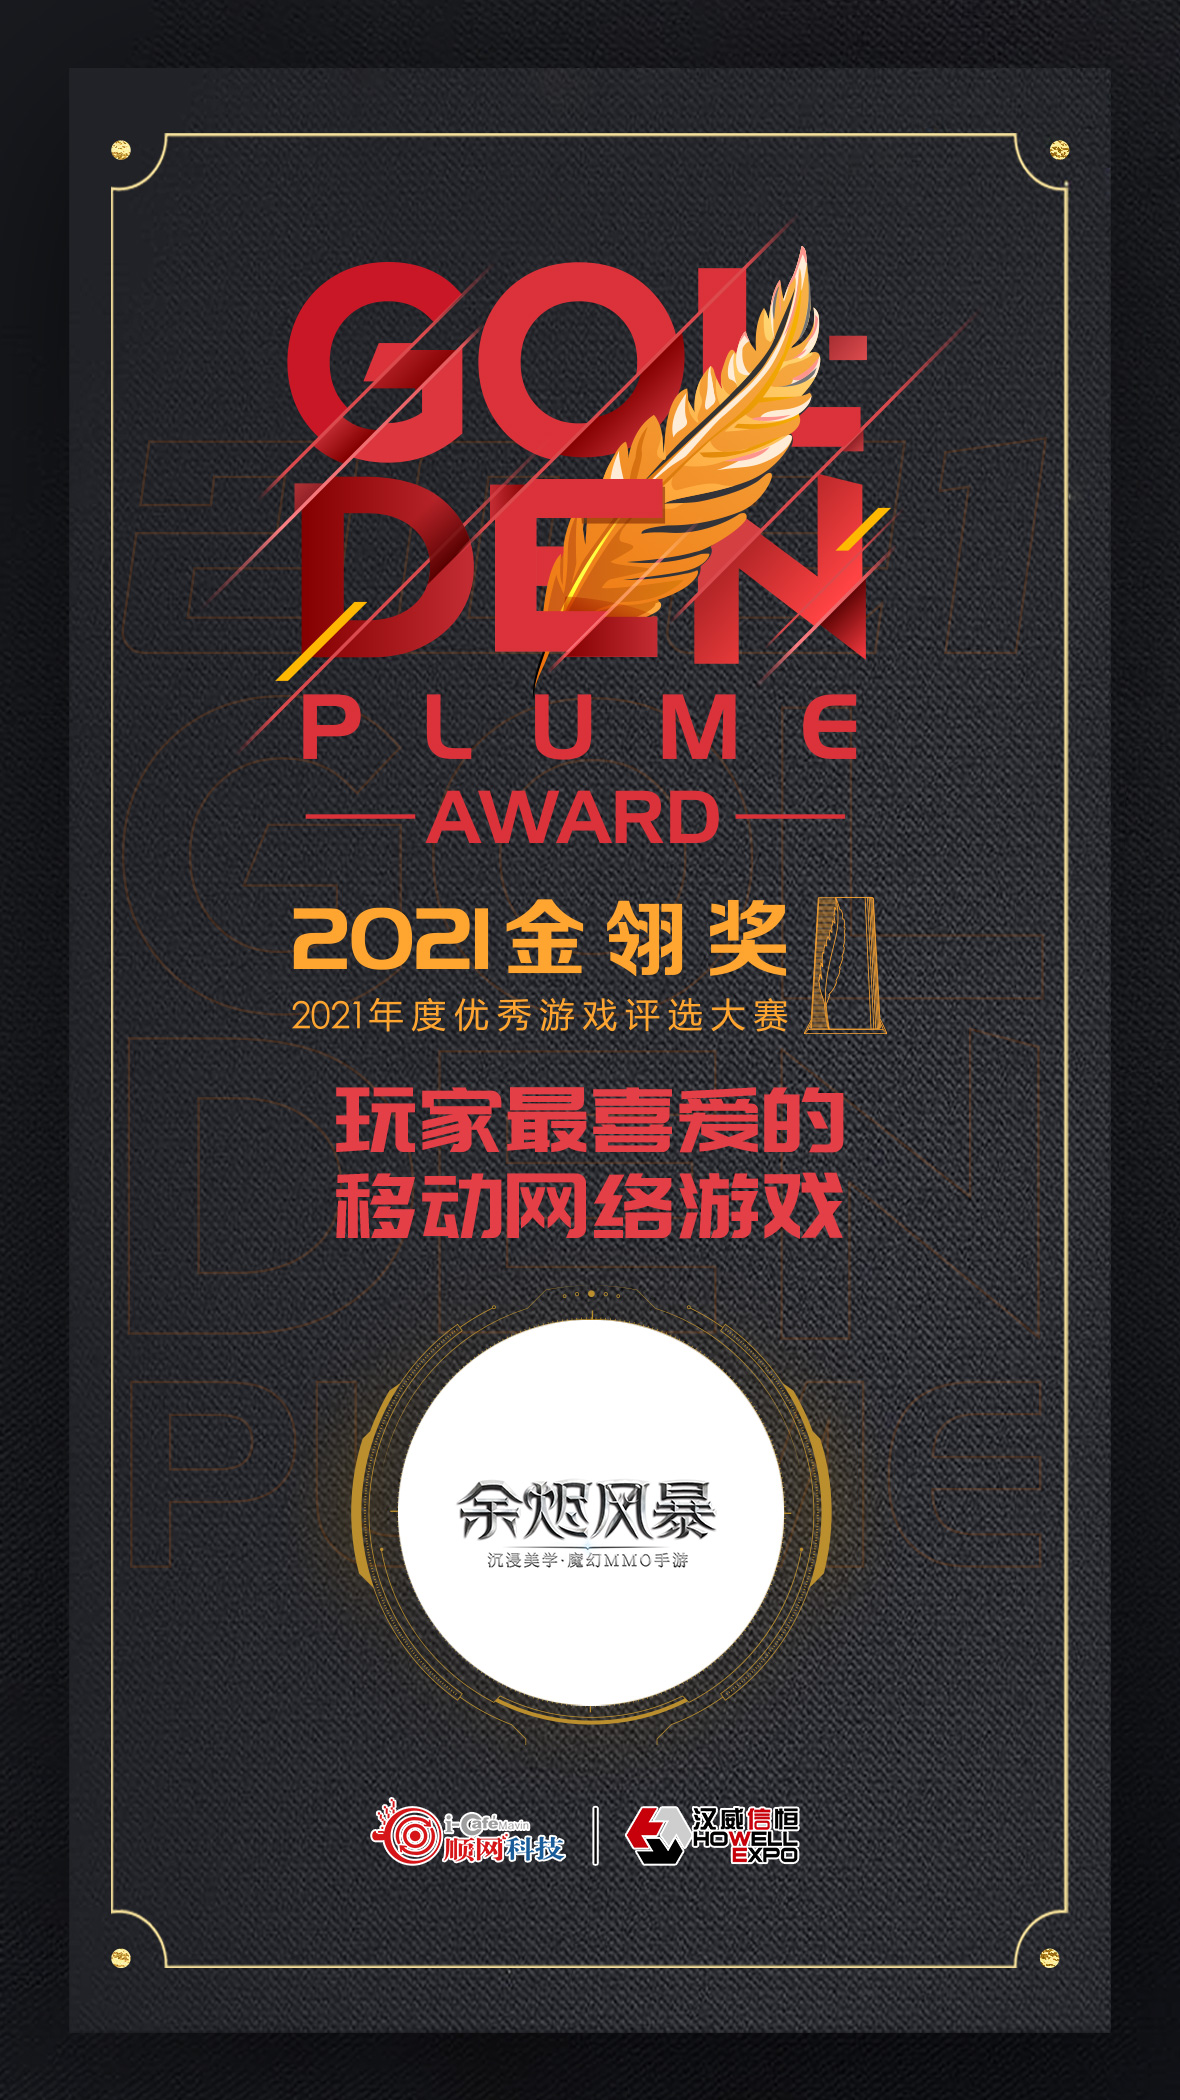 龙图游戏荣获2021金翎奖 “玩家最喜欢的移动网络游戏”大奖